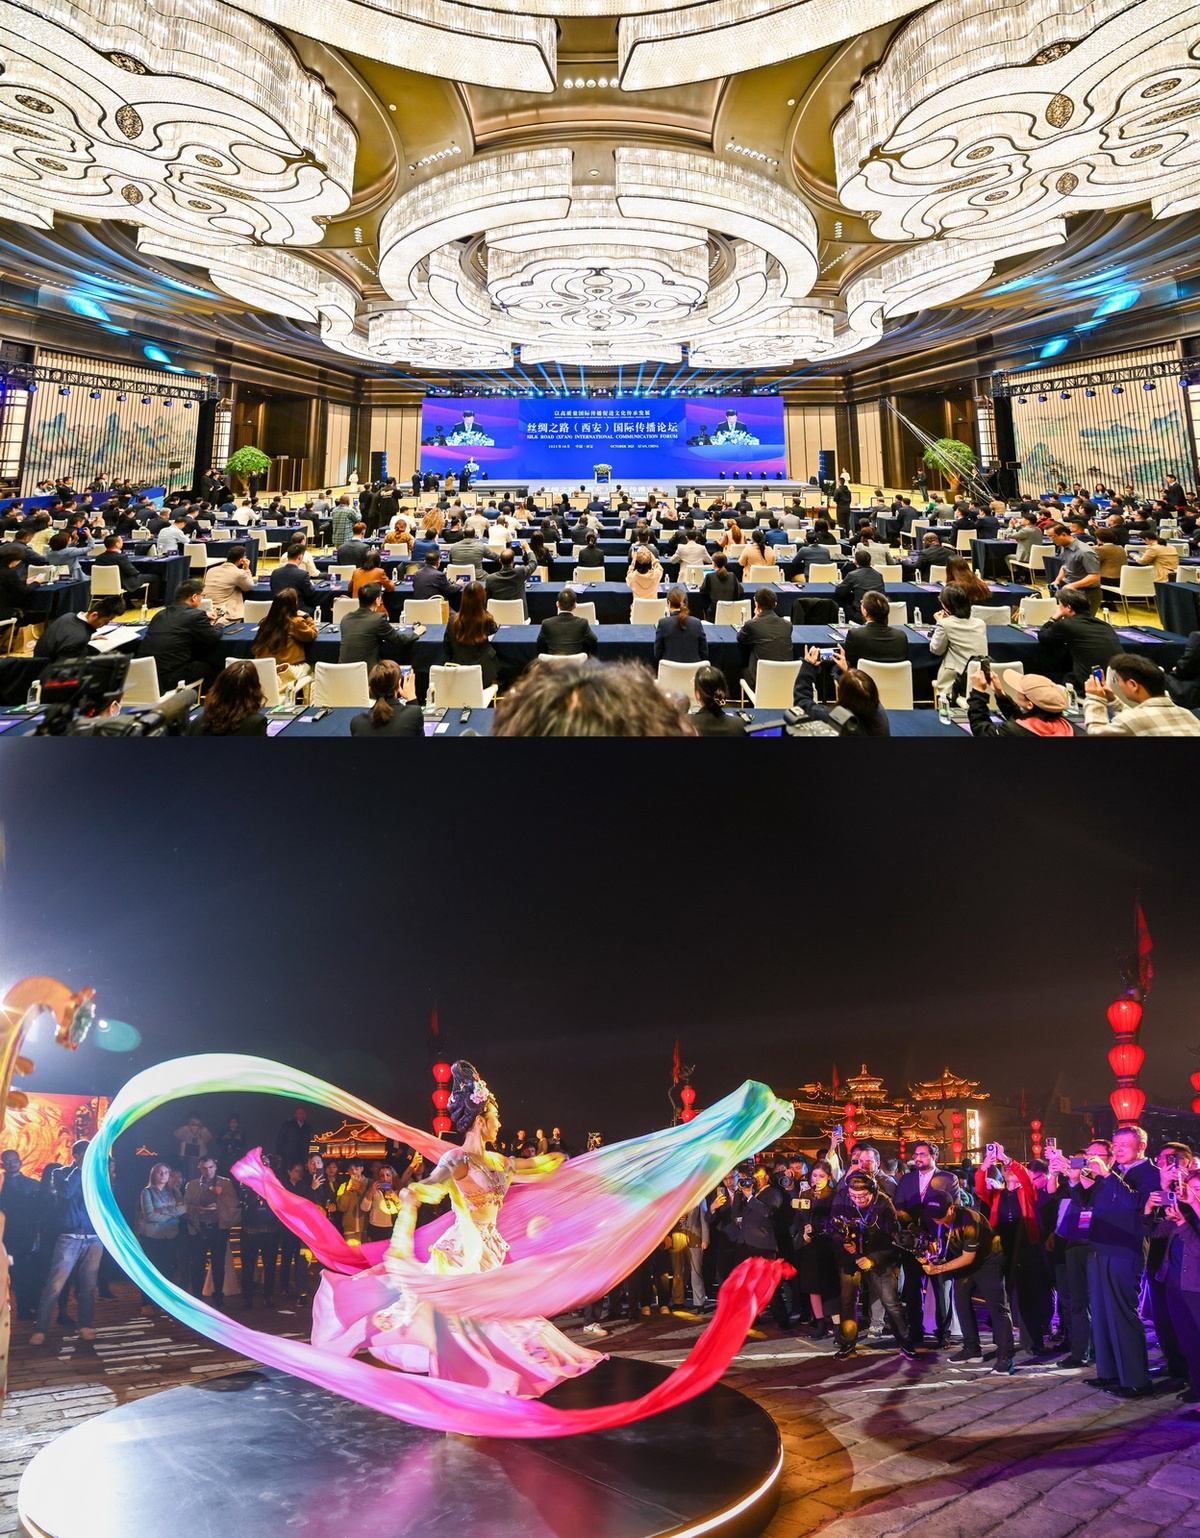 จีนจัดการประชุมว่าด้วยการสื่อสารระหว่างประเทศเส้นทางสายไหม (ซีอาน) ส่งเสริมมรดกทางวัฒนธรรมและการพัฒนา